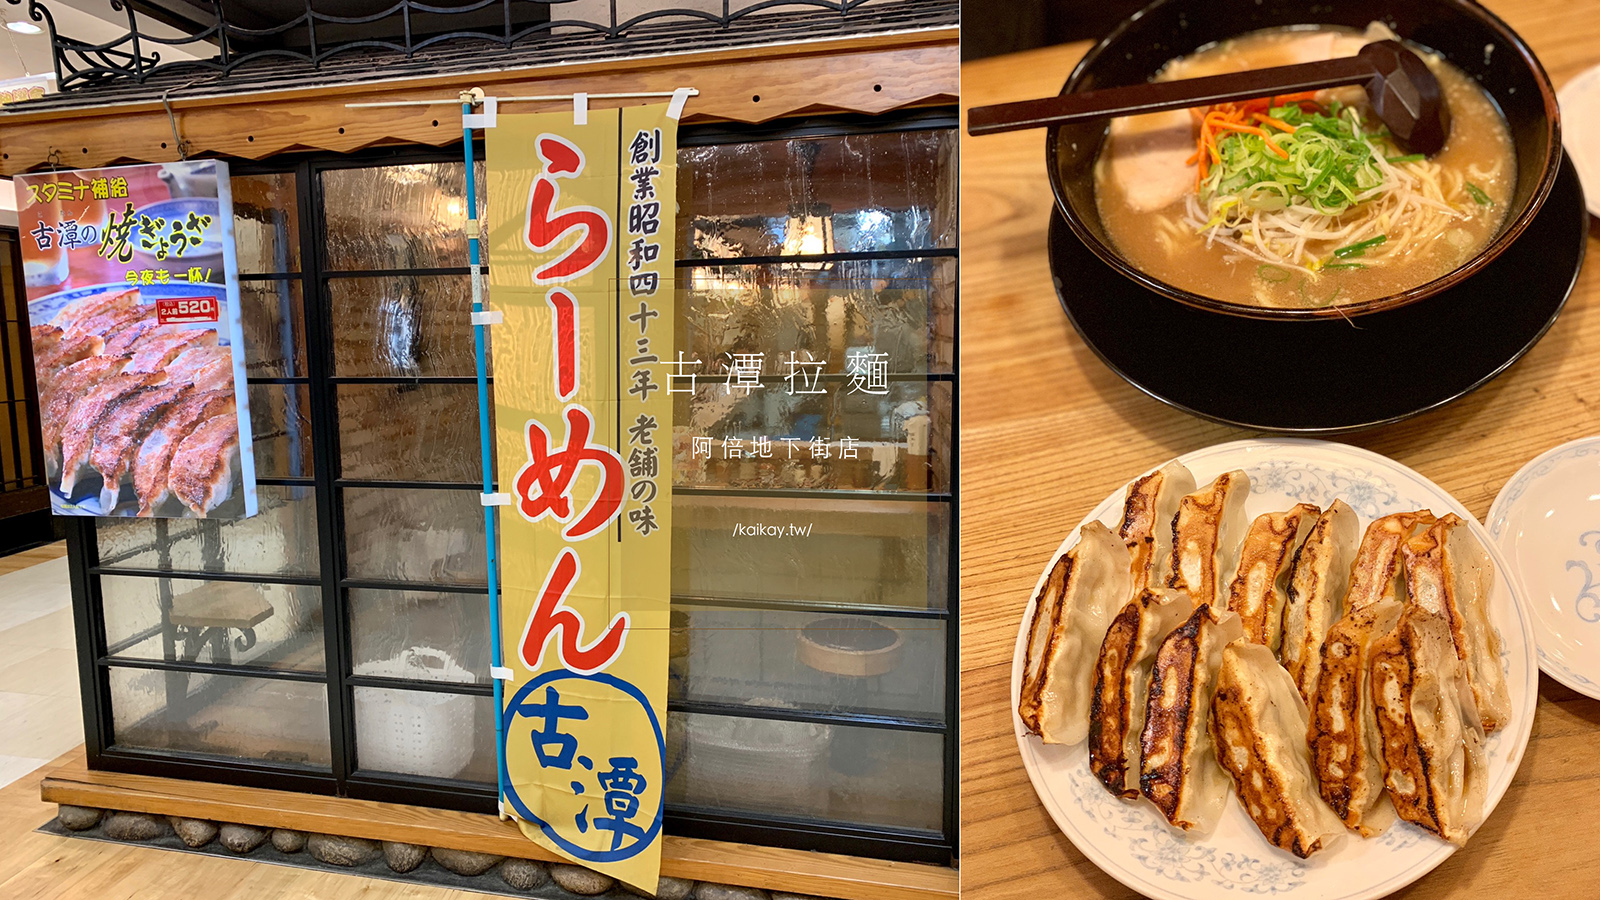 延伸閱讀：☆【2019。大阪】脆皮煎餃超好吃！大阪人推薦的老字號古潭拉麵